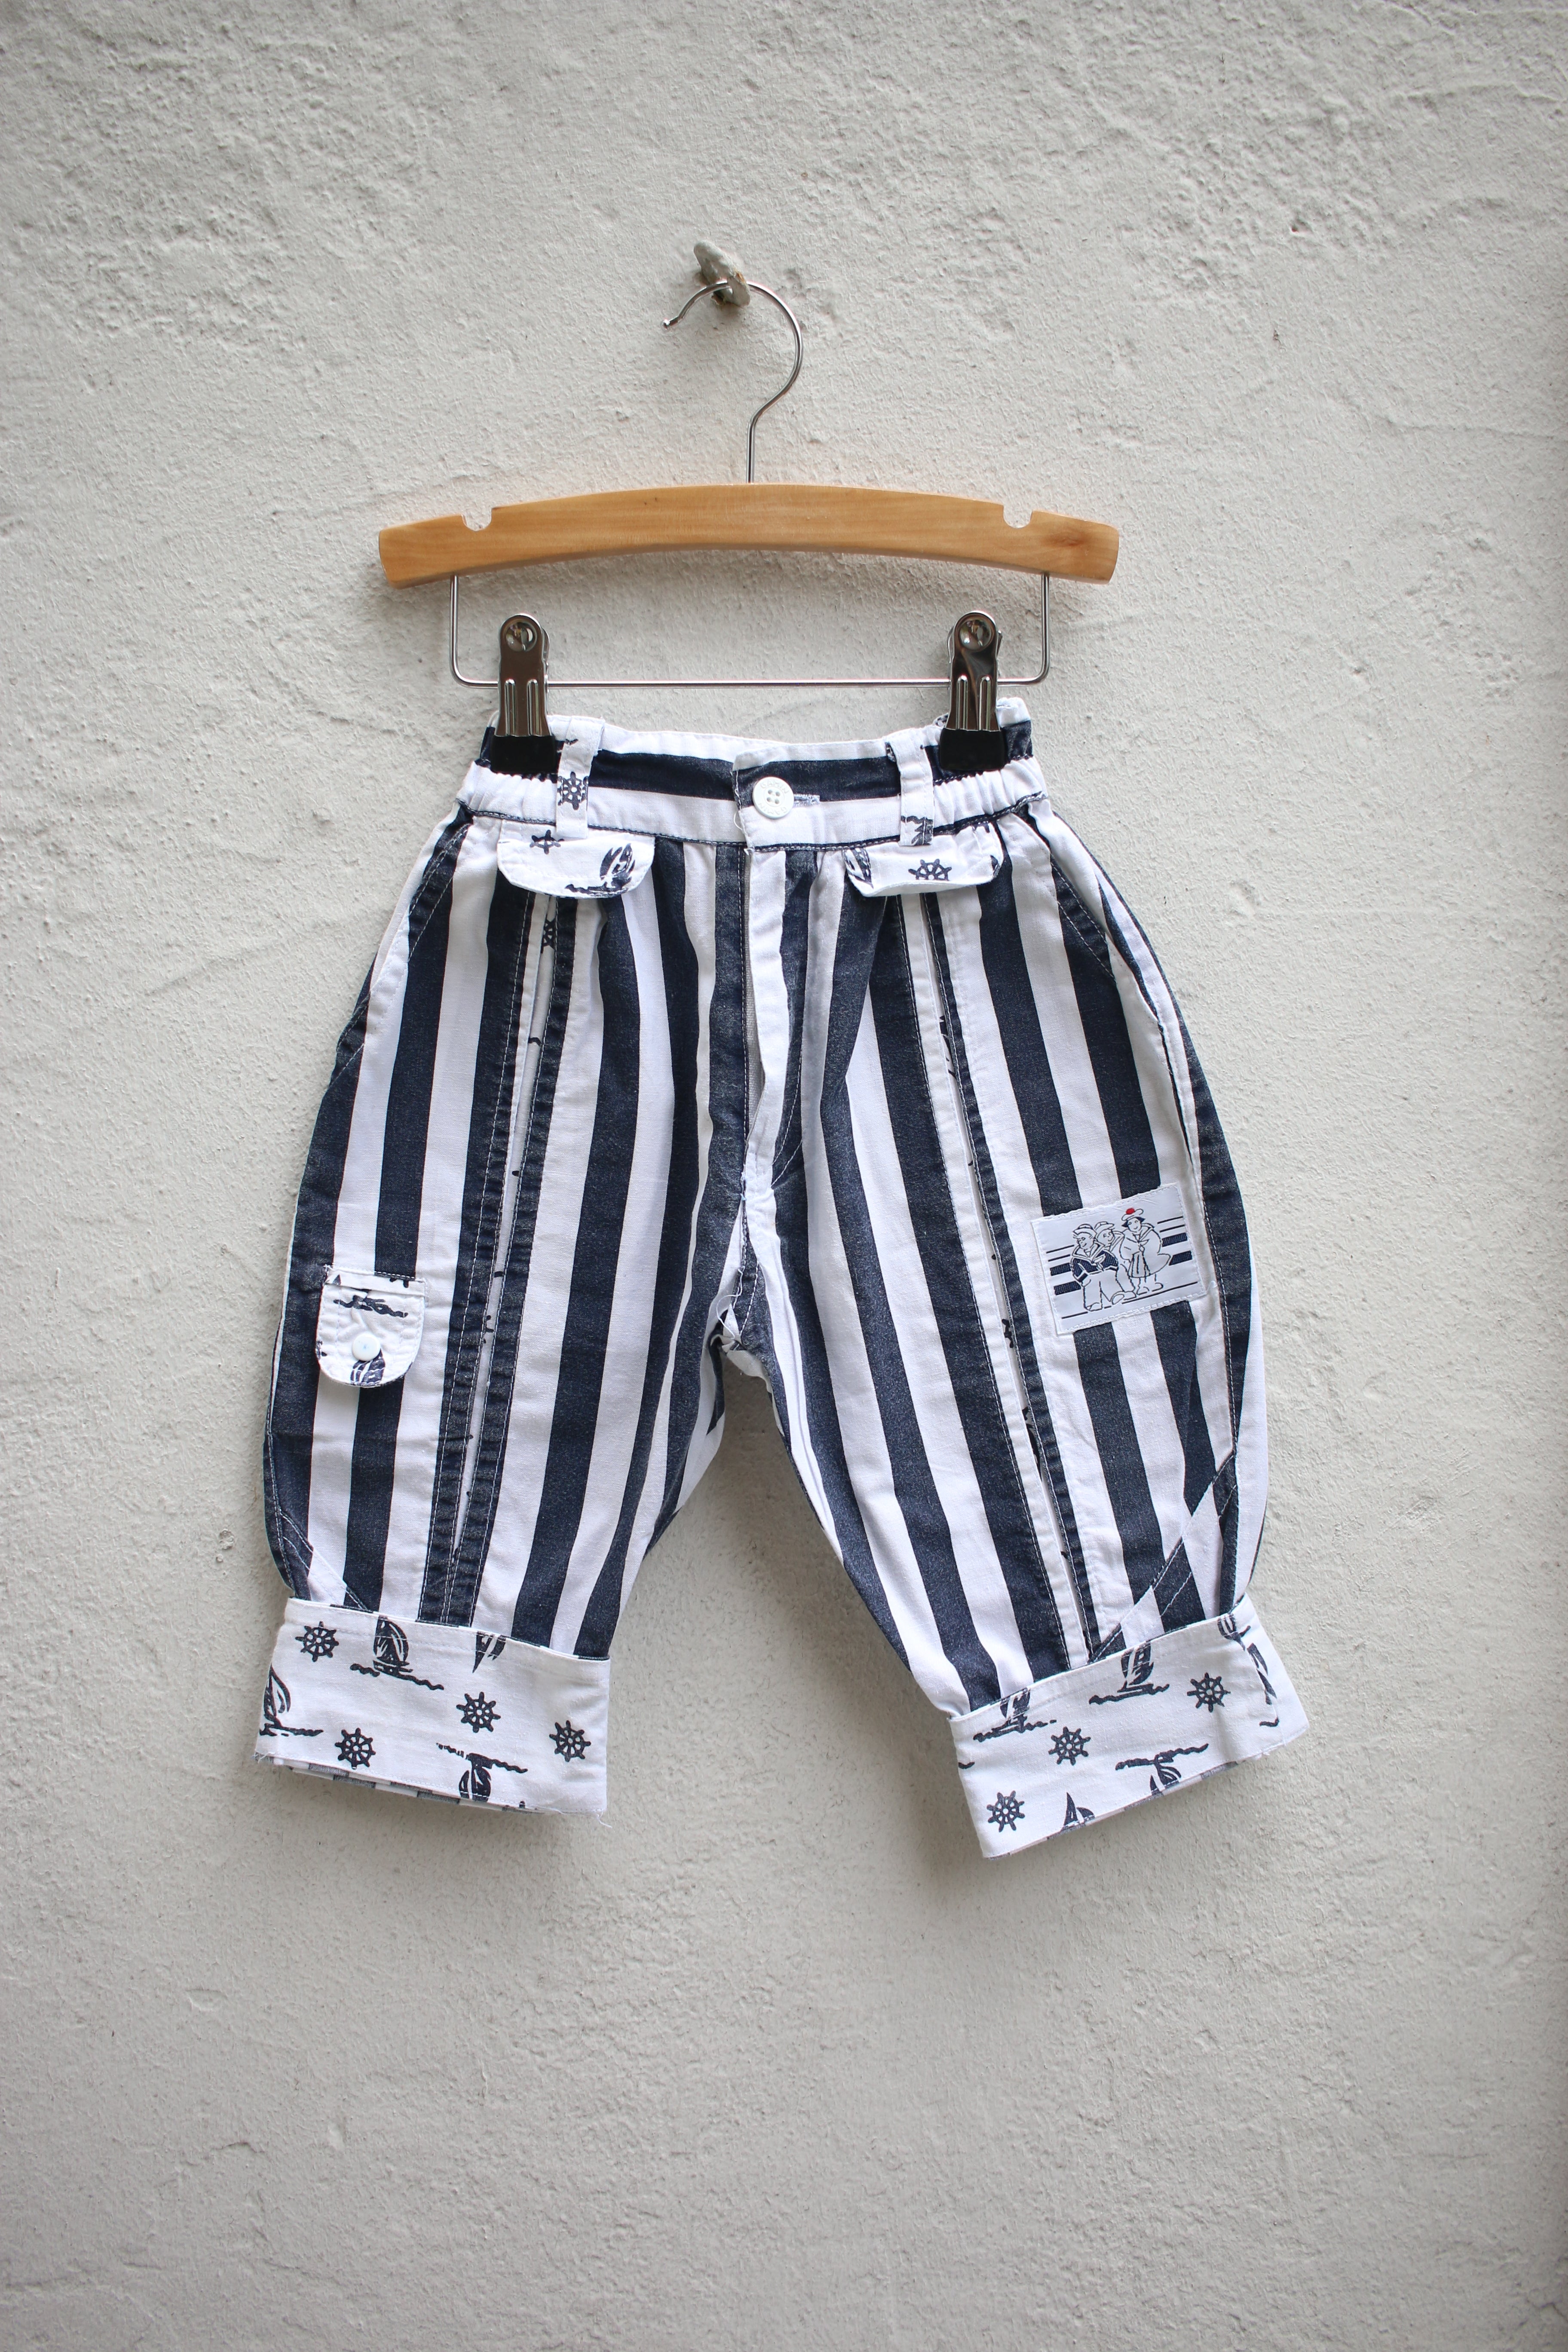 Vintage striped sailor pants - size 12 months